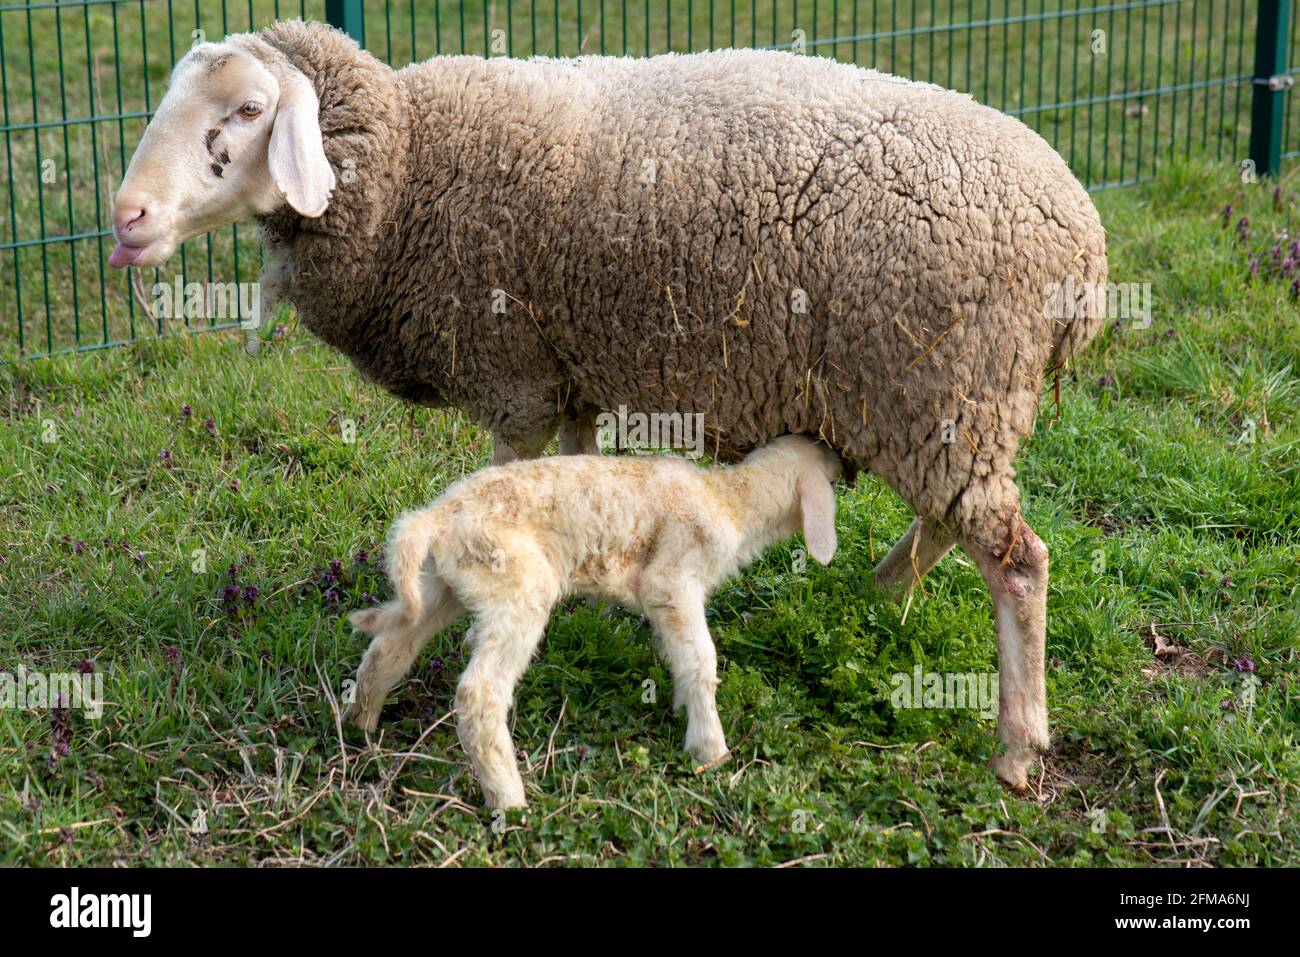 El cordero recién nacido trata de beber, cordero pascual, oveja merino. Foto de stock